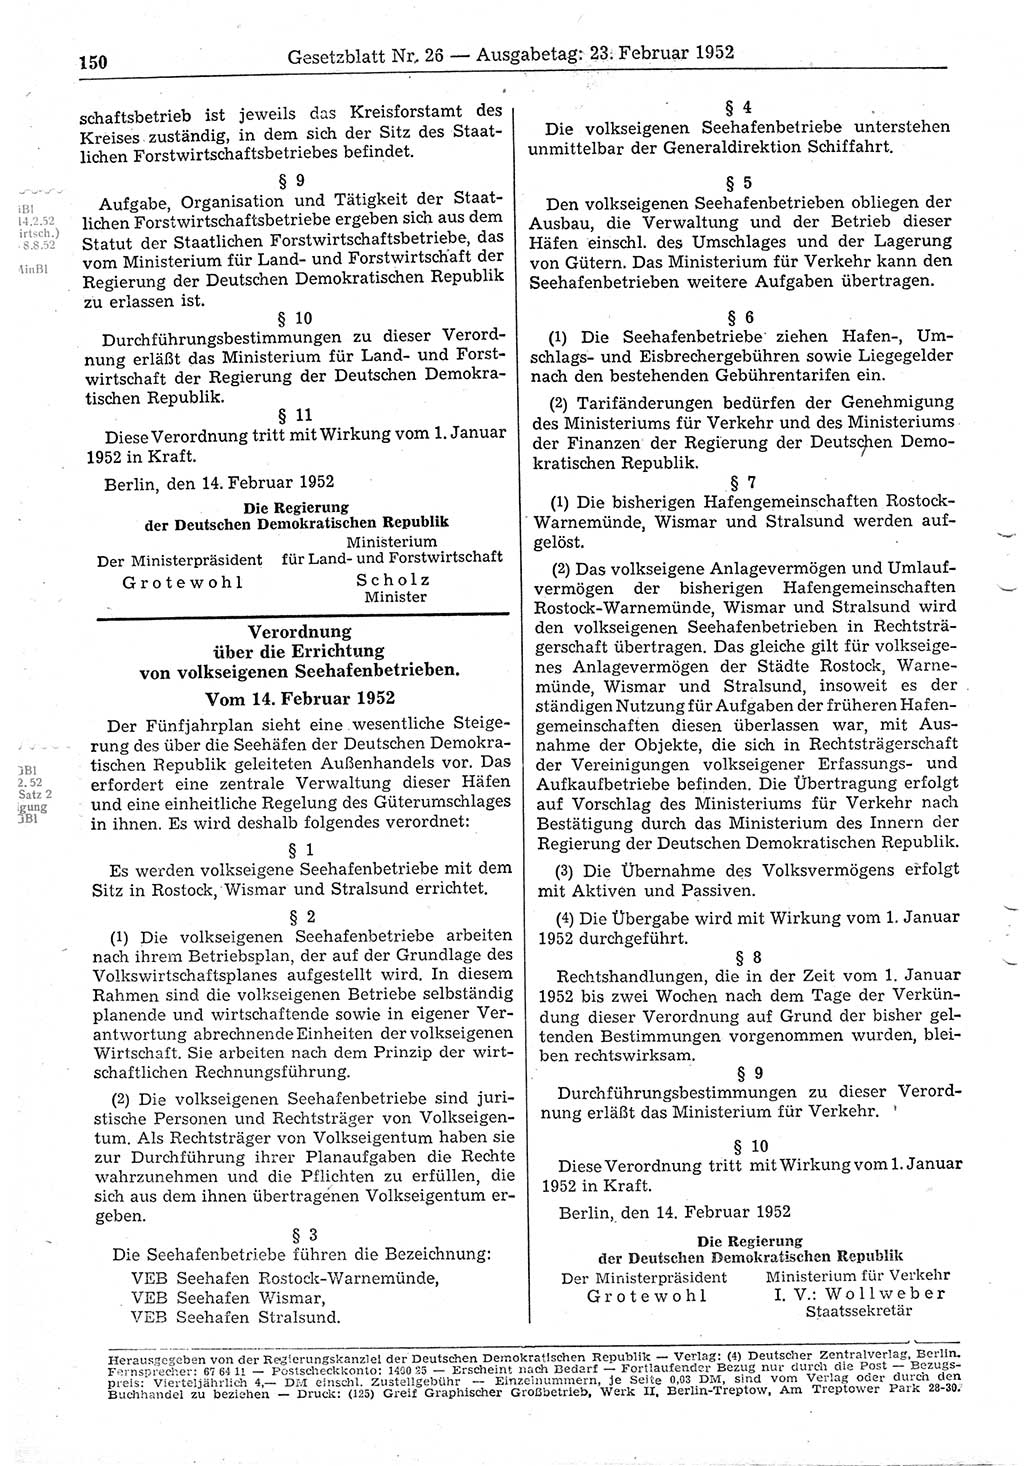 Gesetzblatt (GBl.) der Deutschen Demokratischen Republik (DDR) 1952, Seite 150 (GBl. DDR 1952, S. 150)